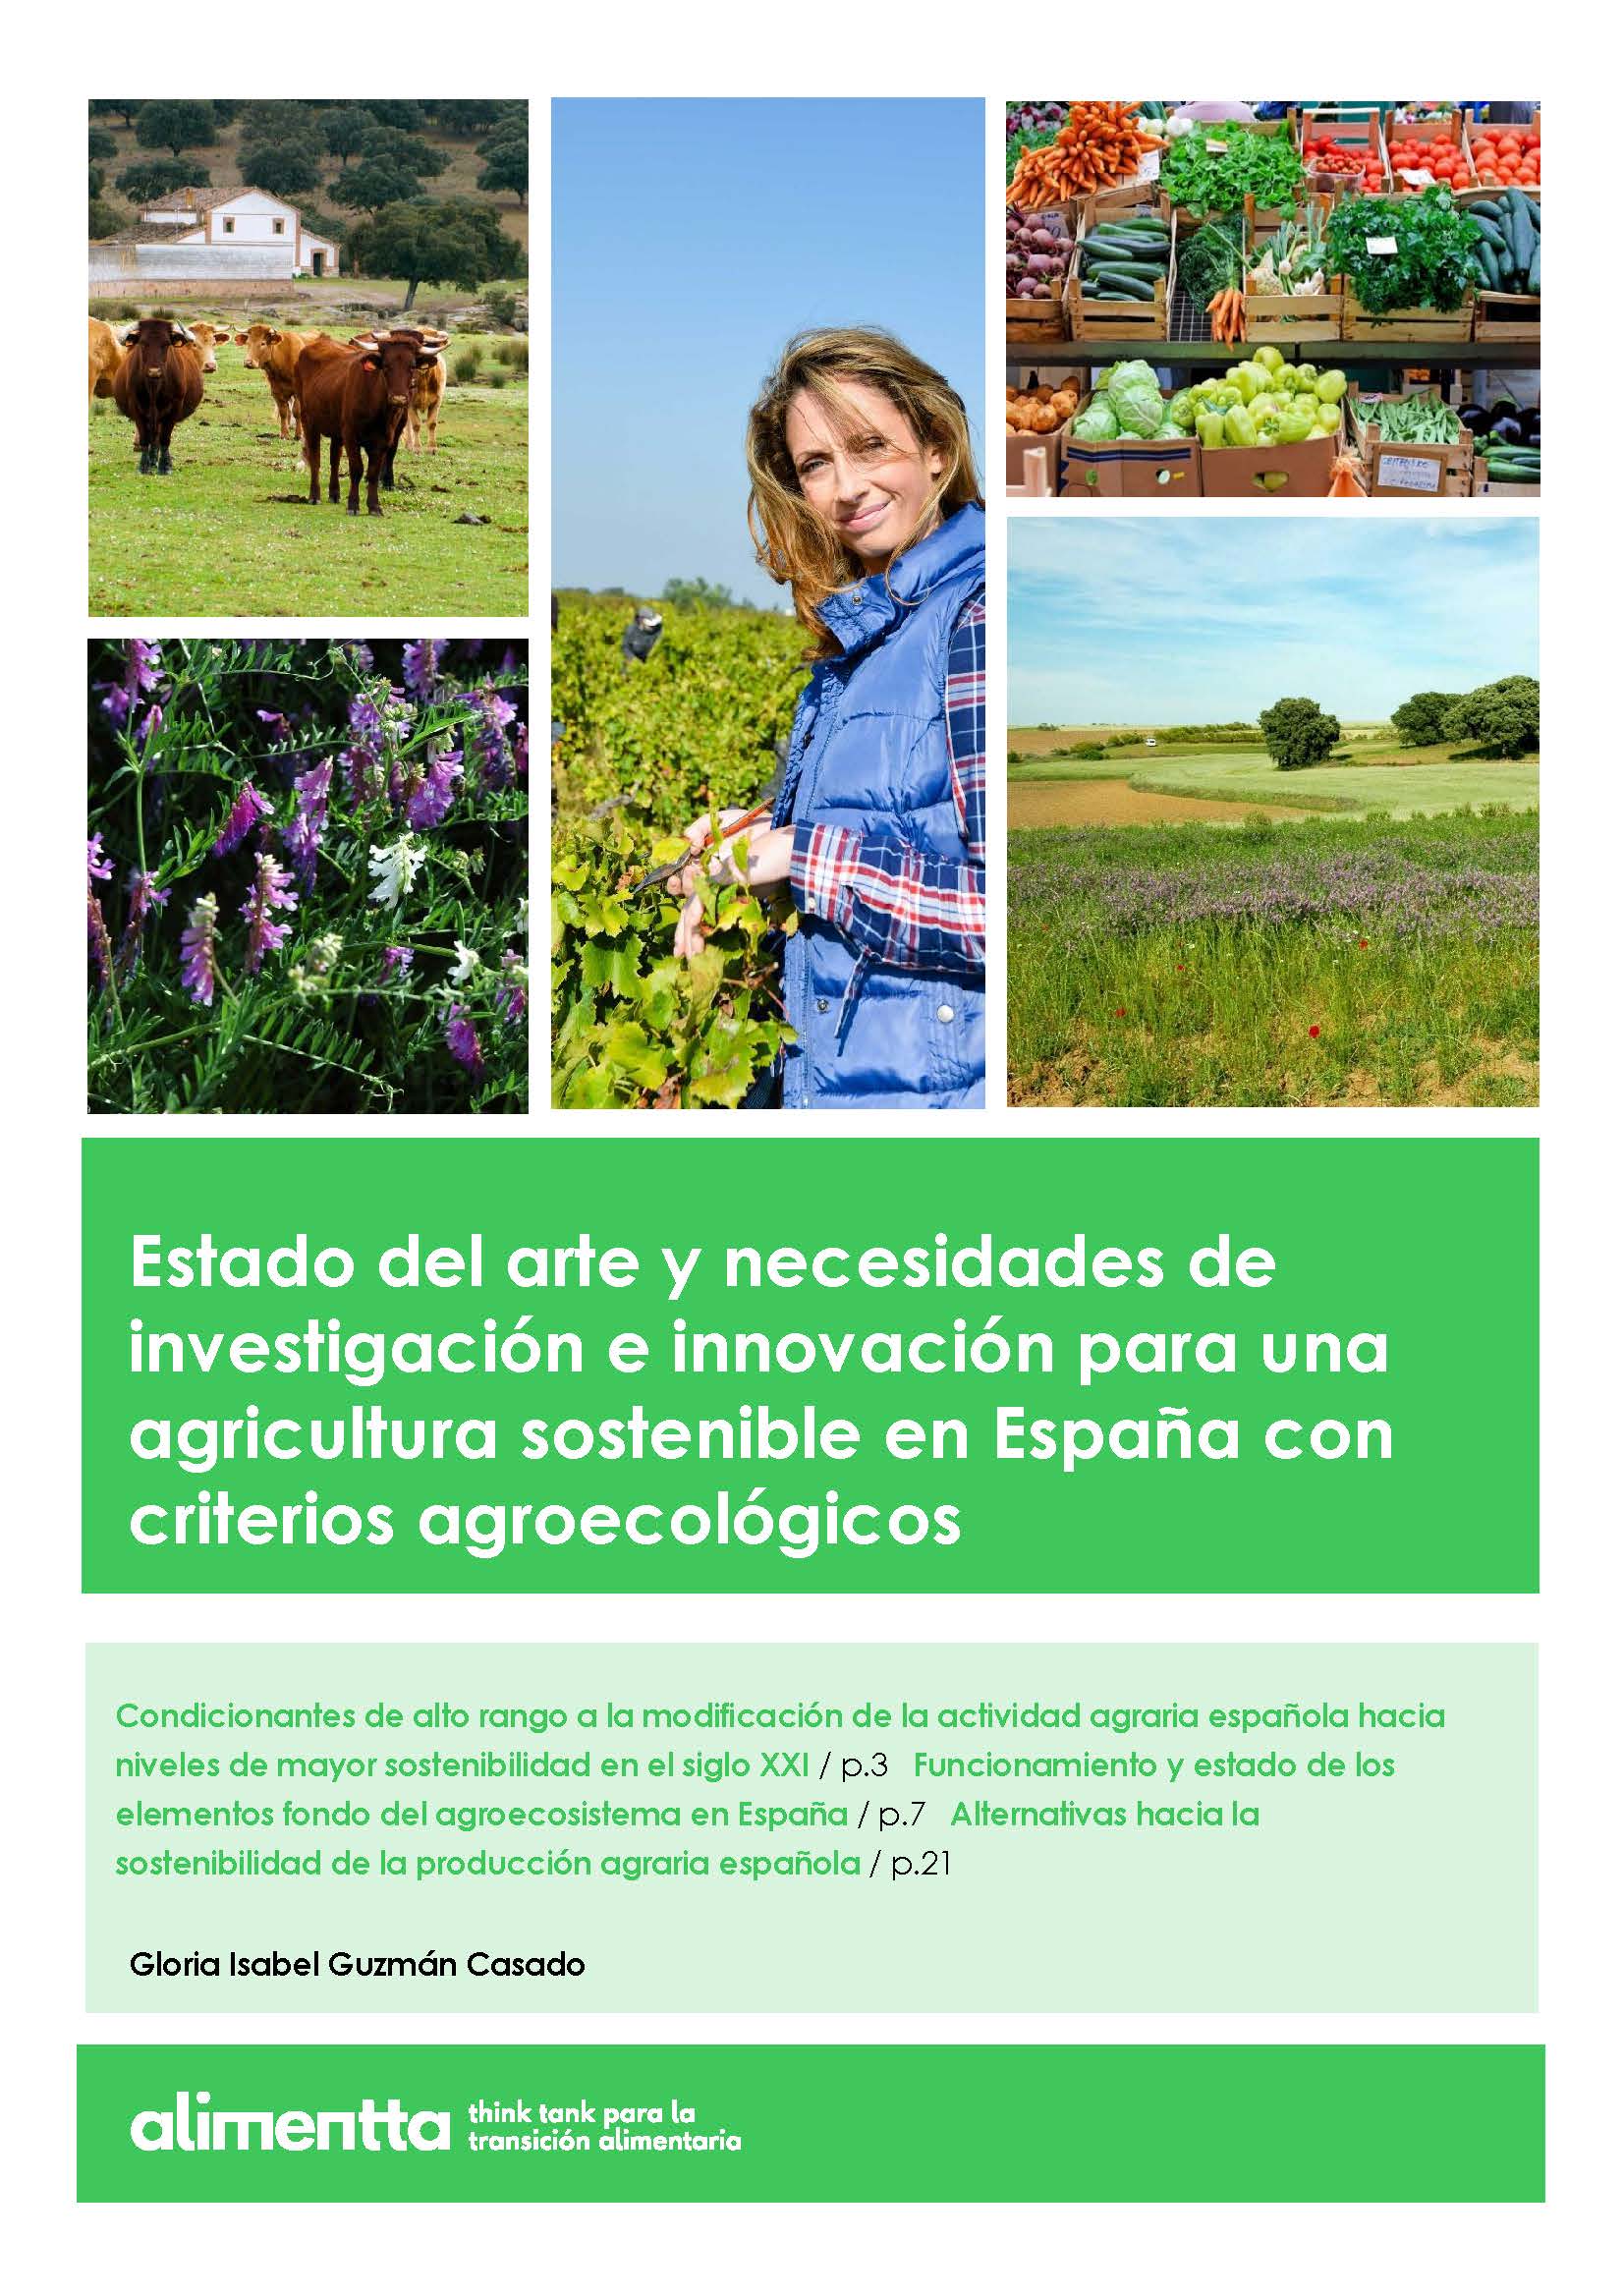 Alimentta_Guzman_AgriculturaSostenible_2019_04 (1)_Página_01